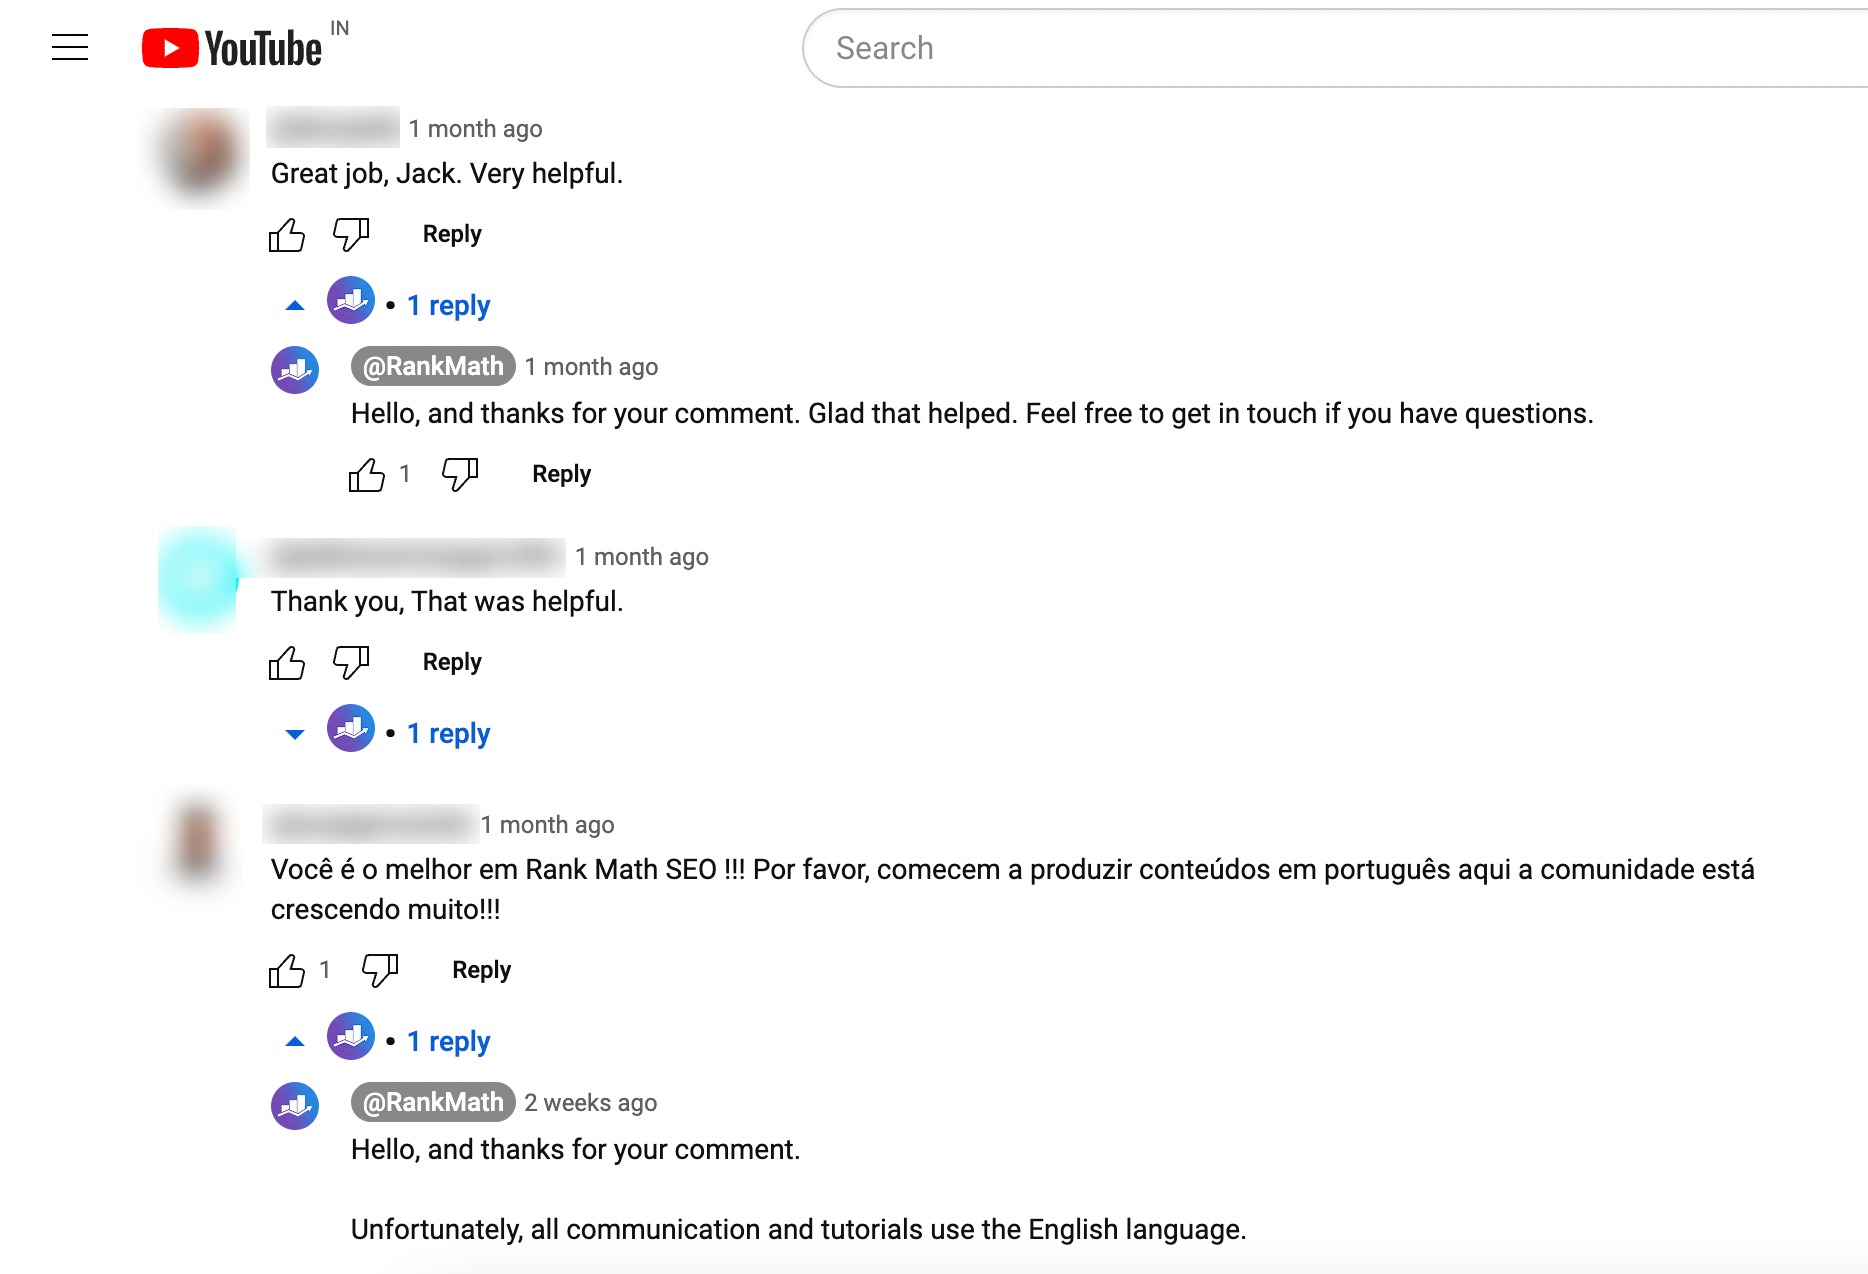 Kommentare/Antworten auf YouTube